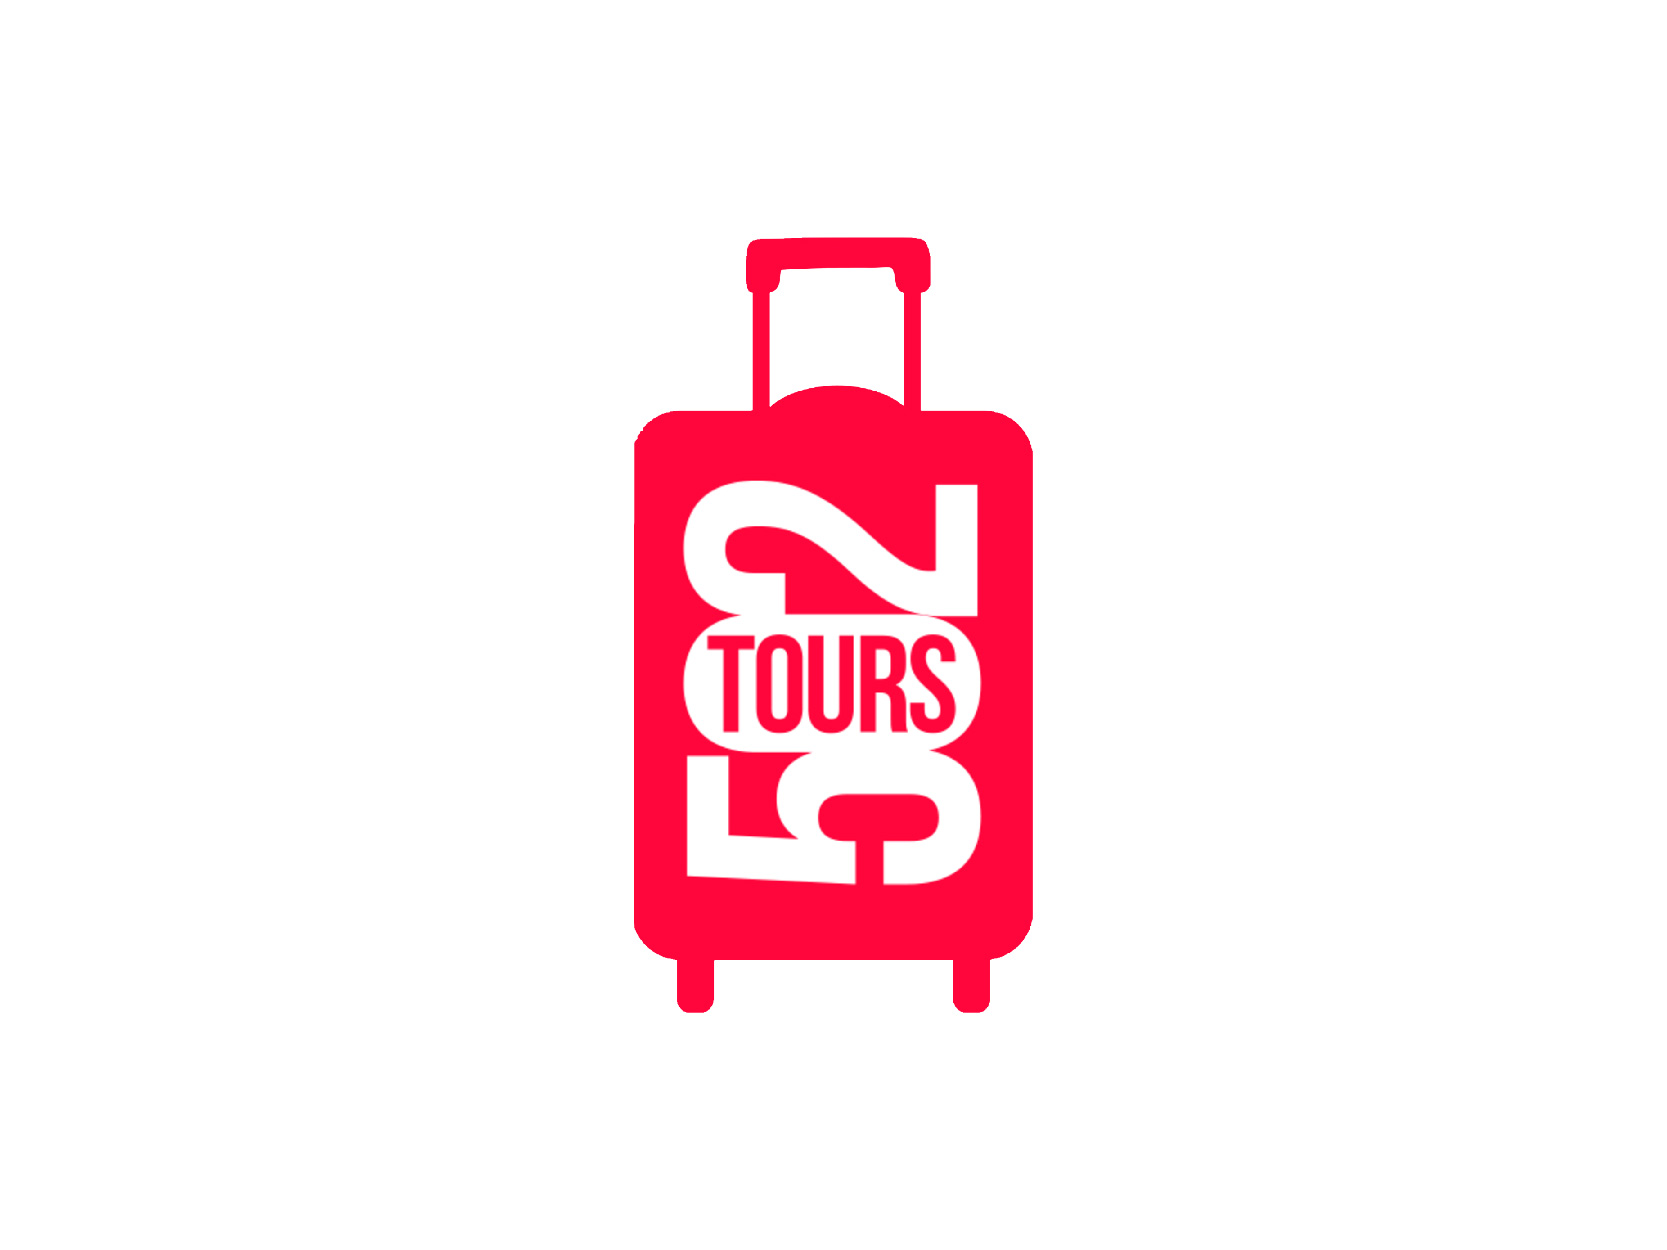 Viaja a Panamá, Cartagena, Cuba o Roatán por tarifas especiales con Tours 502